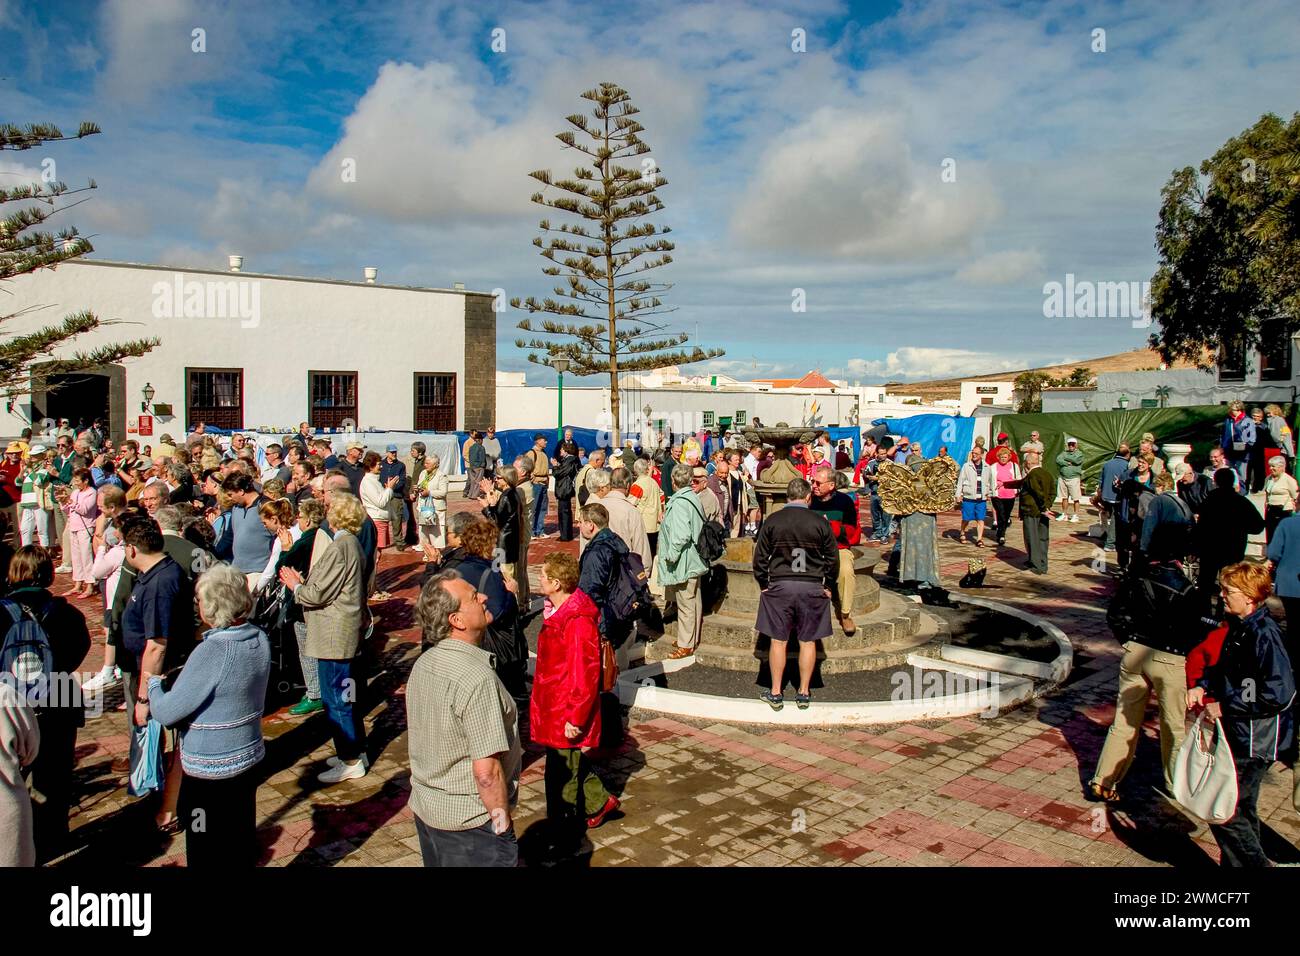 A Tenerife, Isole Canarie, la popolazione locale della città di Teguise festeggia nel centro della città con spettacoli di canto e danza tradizionali. Foto Stock